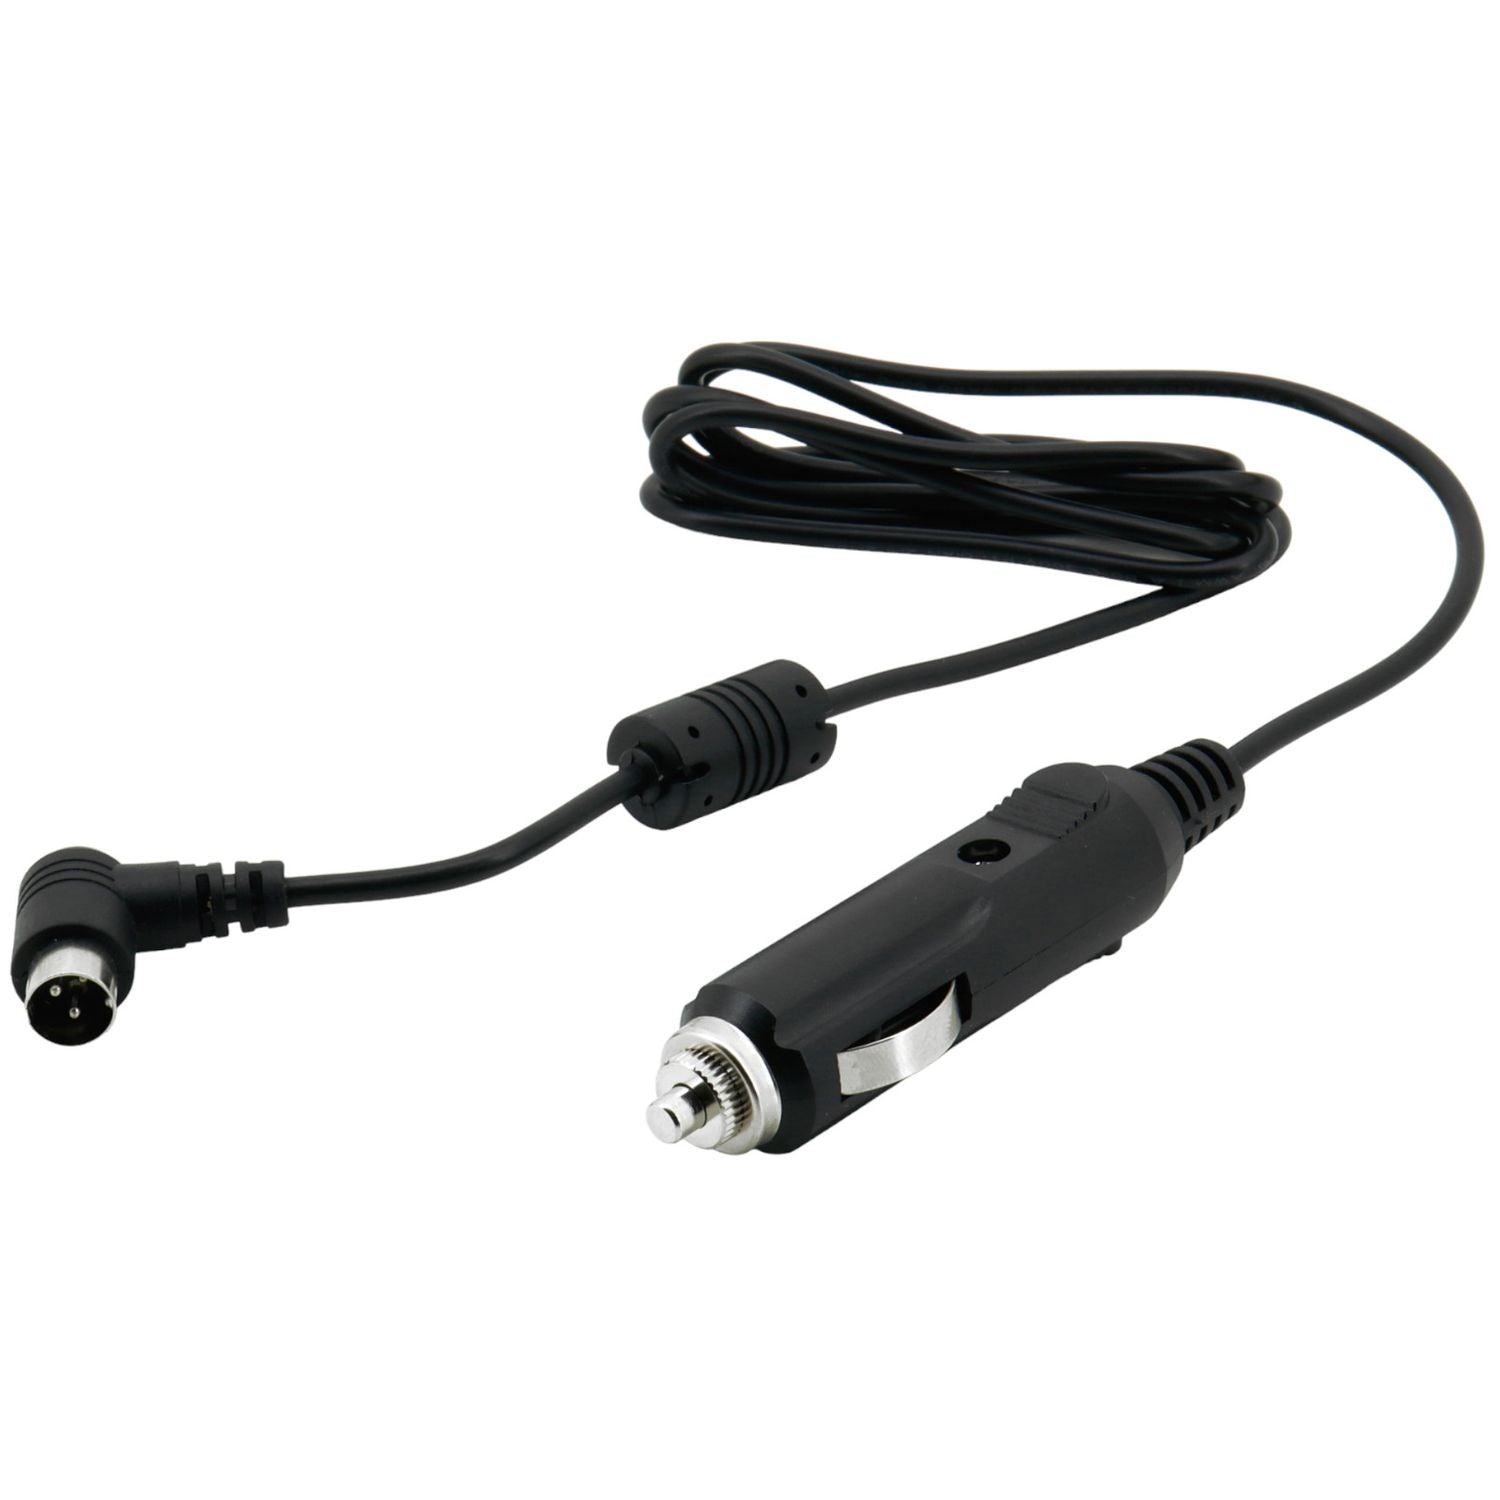 Soundmaster EliteLine KTD12V for kitchen radio KTD1020SI - 12 V car adapter for motorhomes, caravans, campers etc.